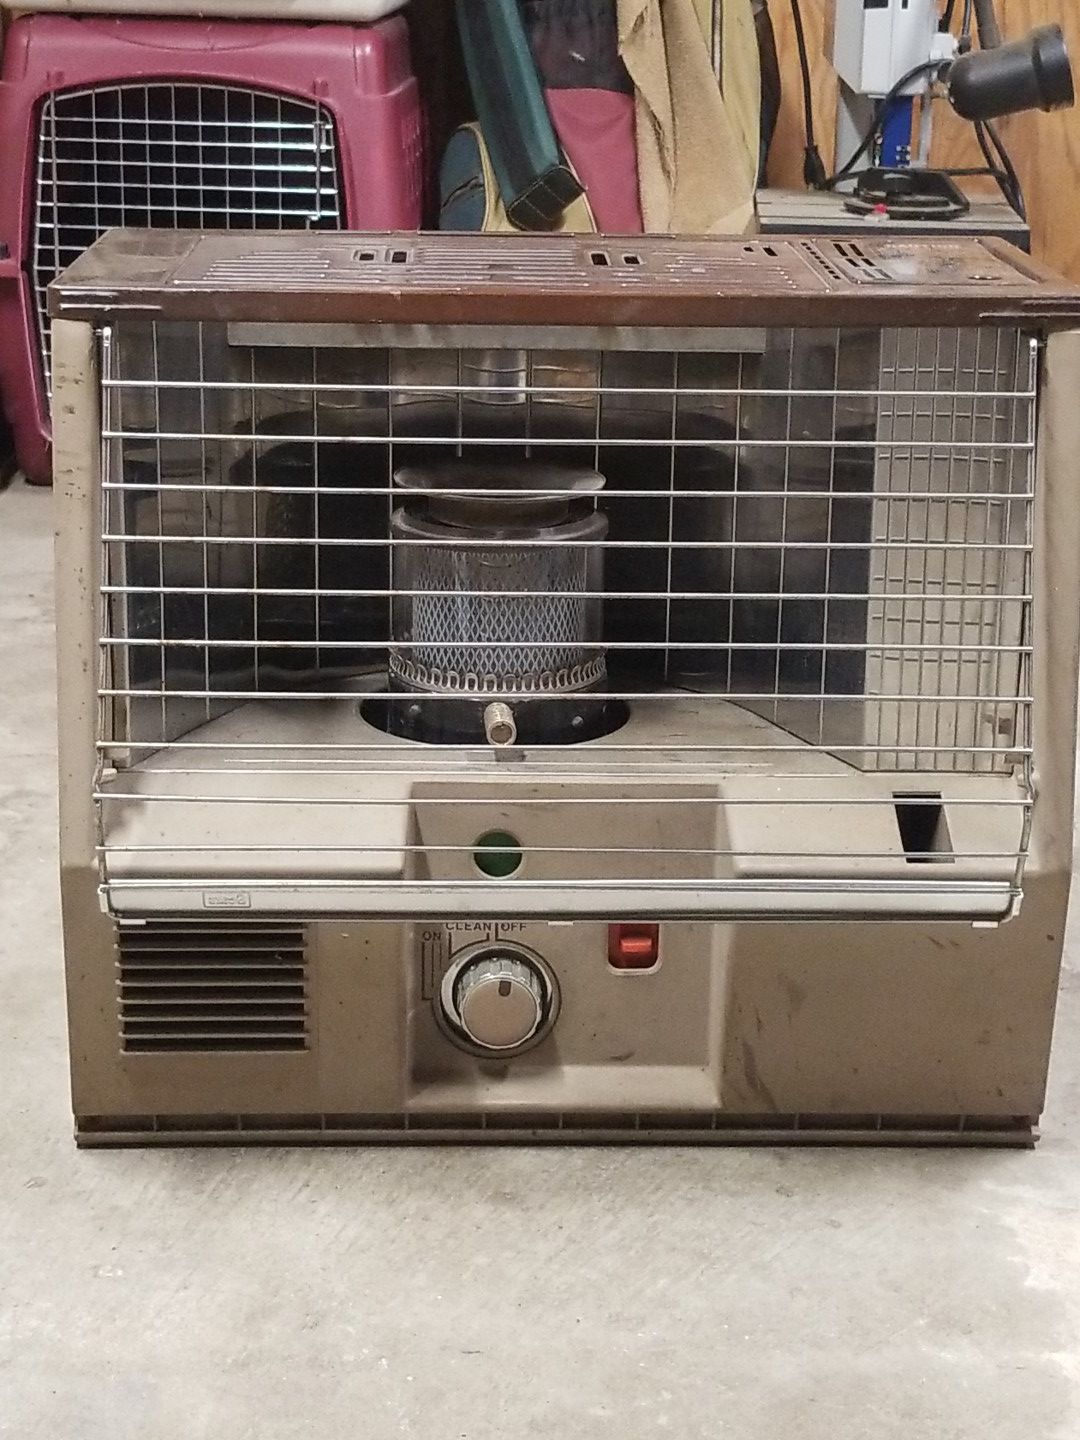 Sears kerosene heater with fan.